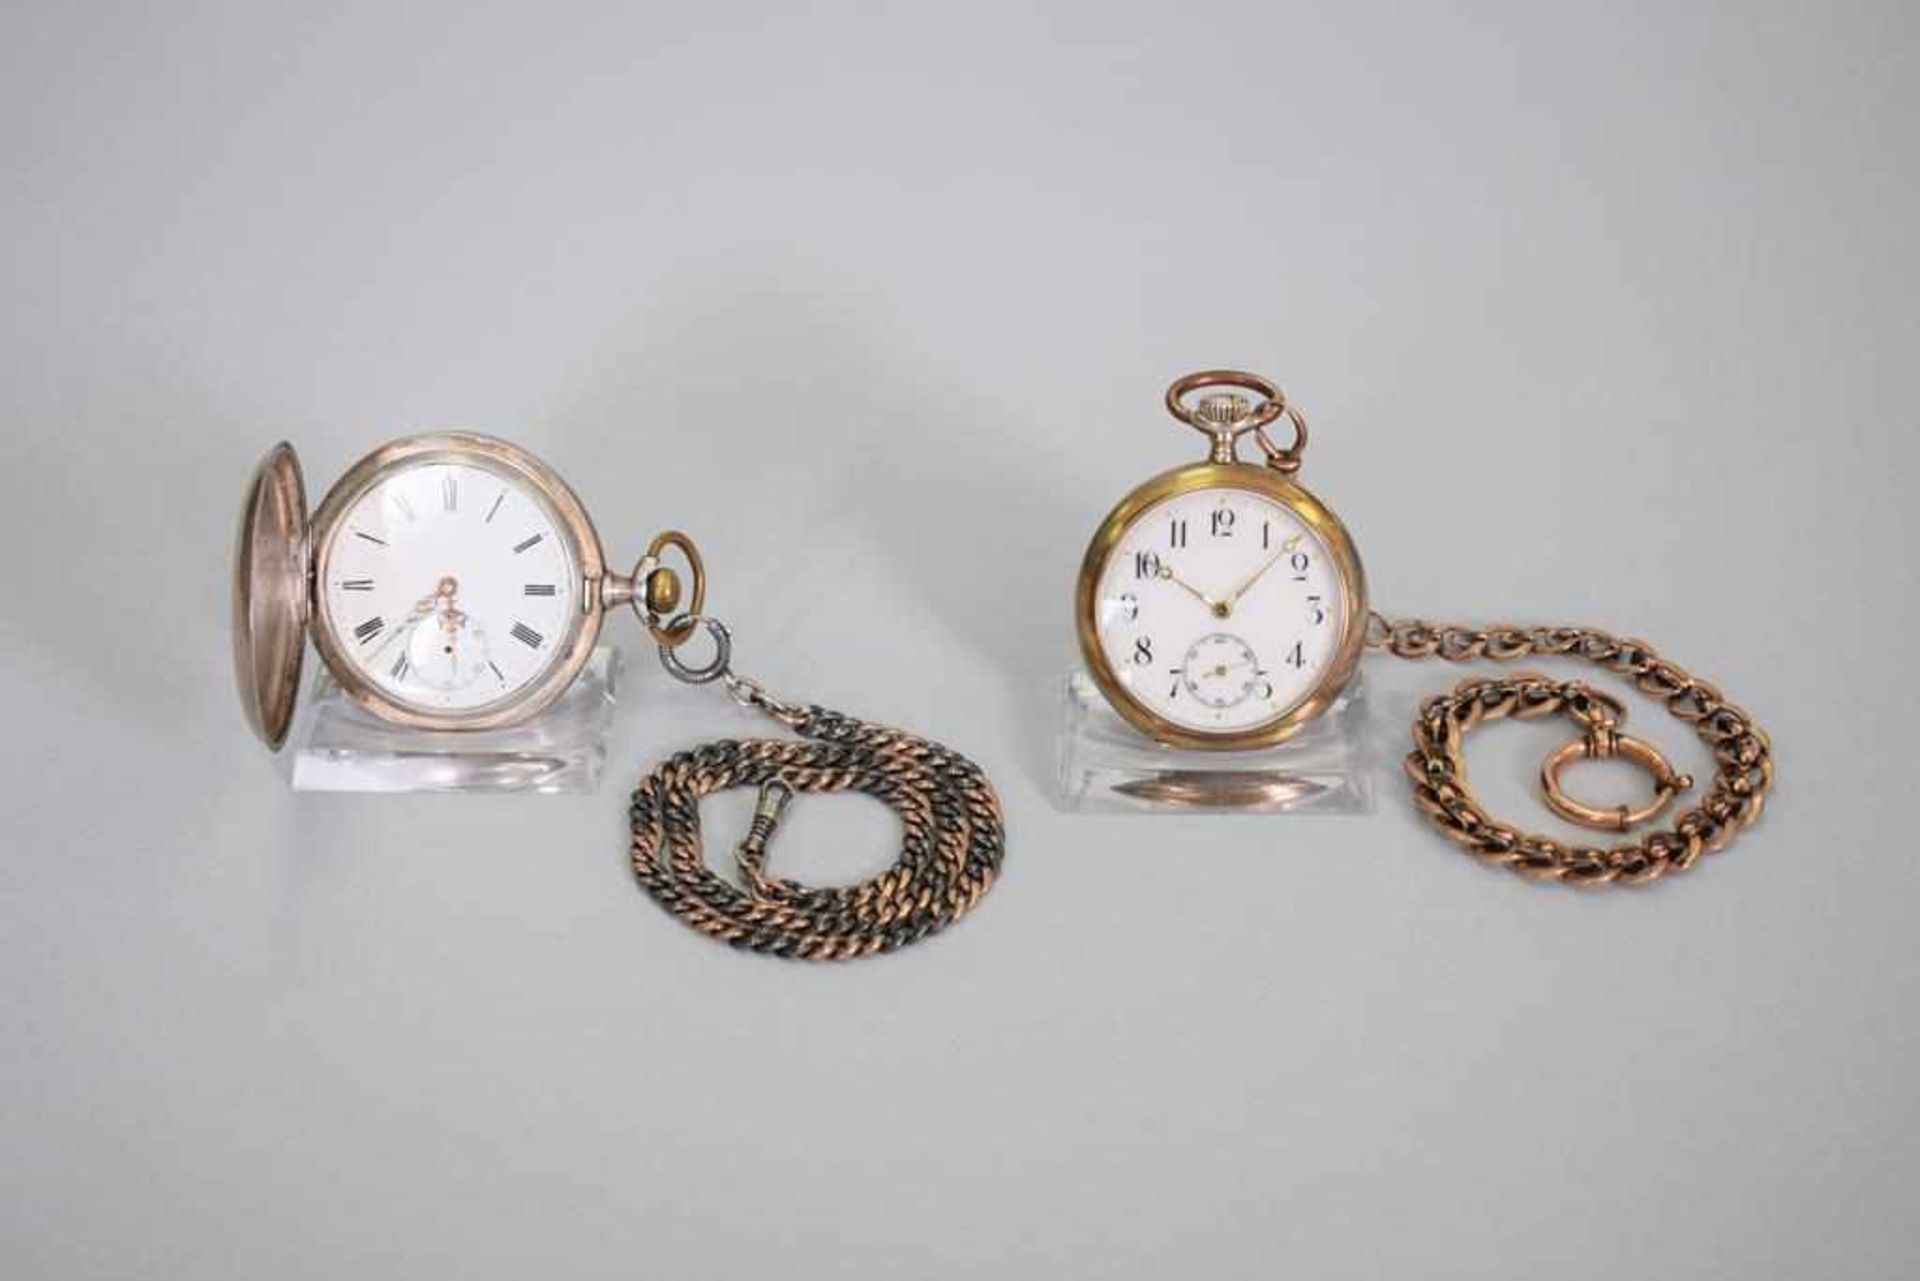 2 Silber Taschenuhren um 18901) Alter um 1890, Innendeckel bez. Anker Auszeichnung Genf 1896, Tula